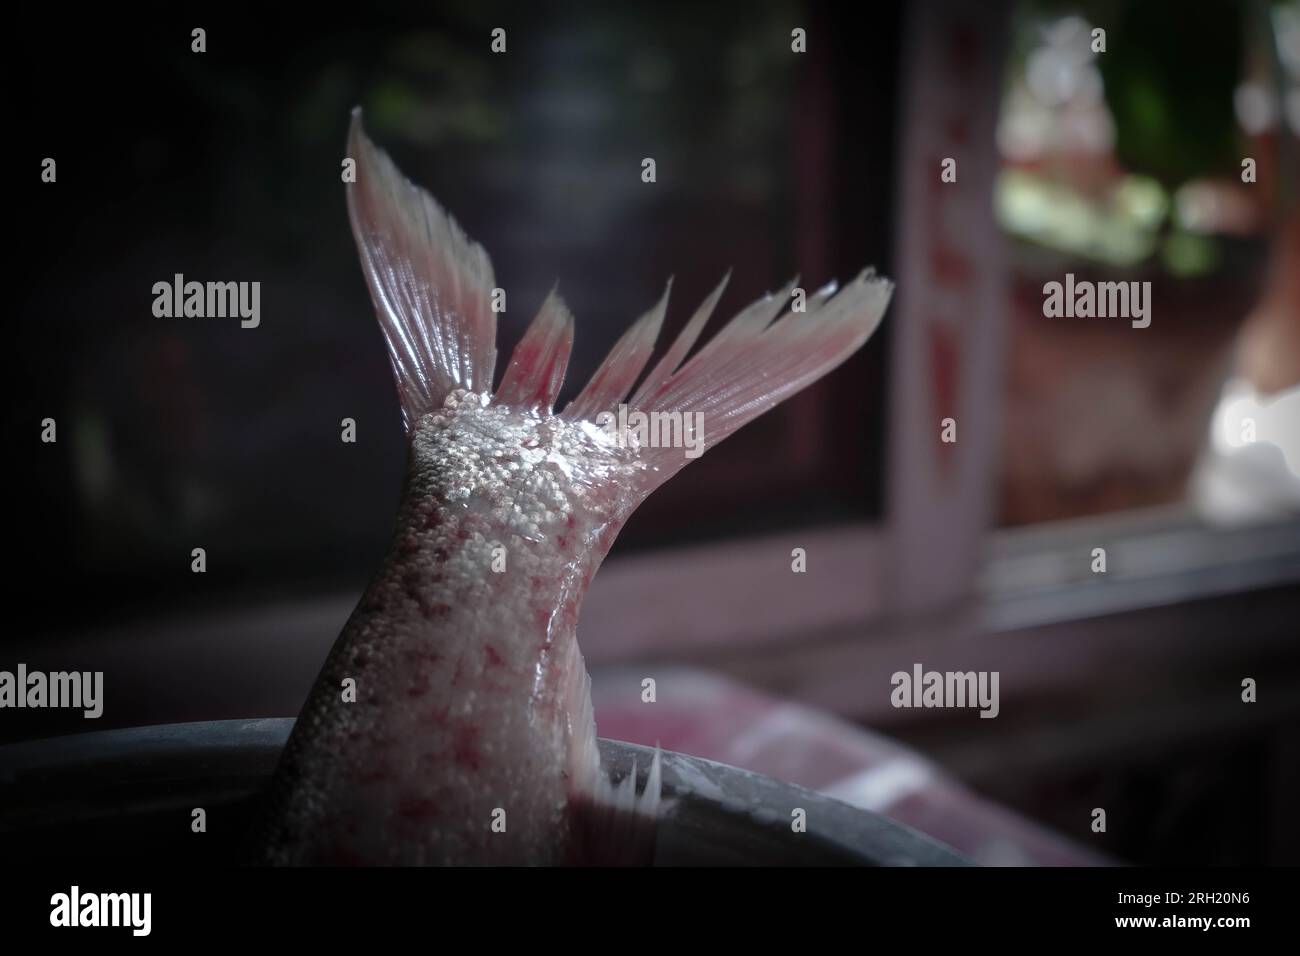 Silberkarpfenfisch in einem Stahltopf mit unscharfem Hintergrund, der den Schwanz des Fisches zeigt Stockfoto